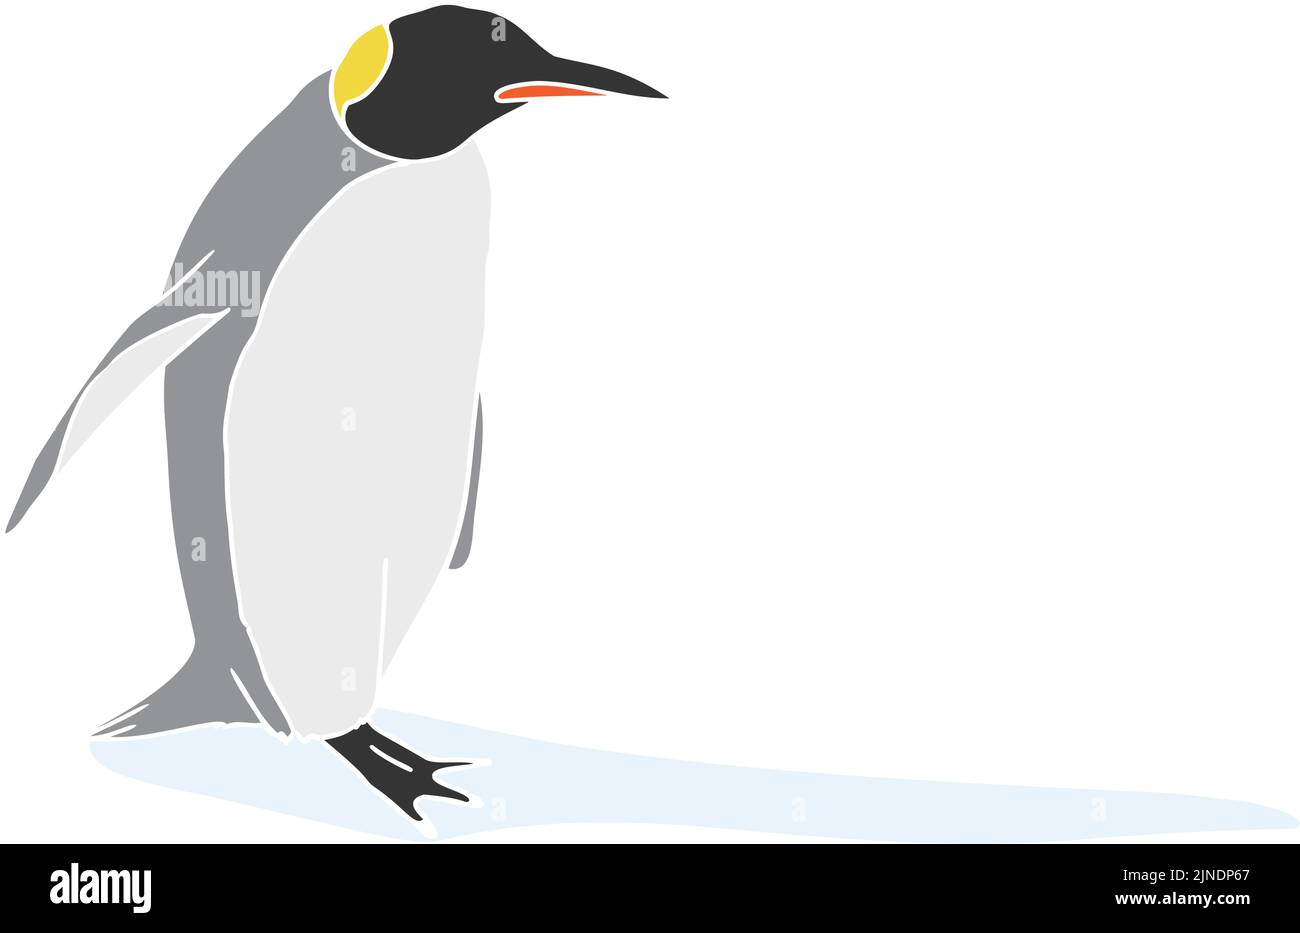 Illustration des pingouins de l'empereur, la ligne principale est blanche Illustration de Vecteur